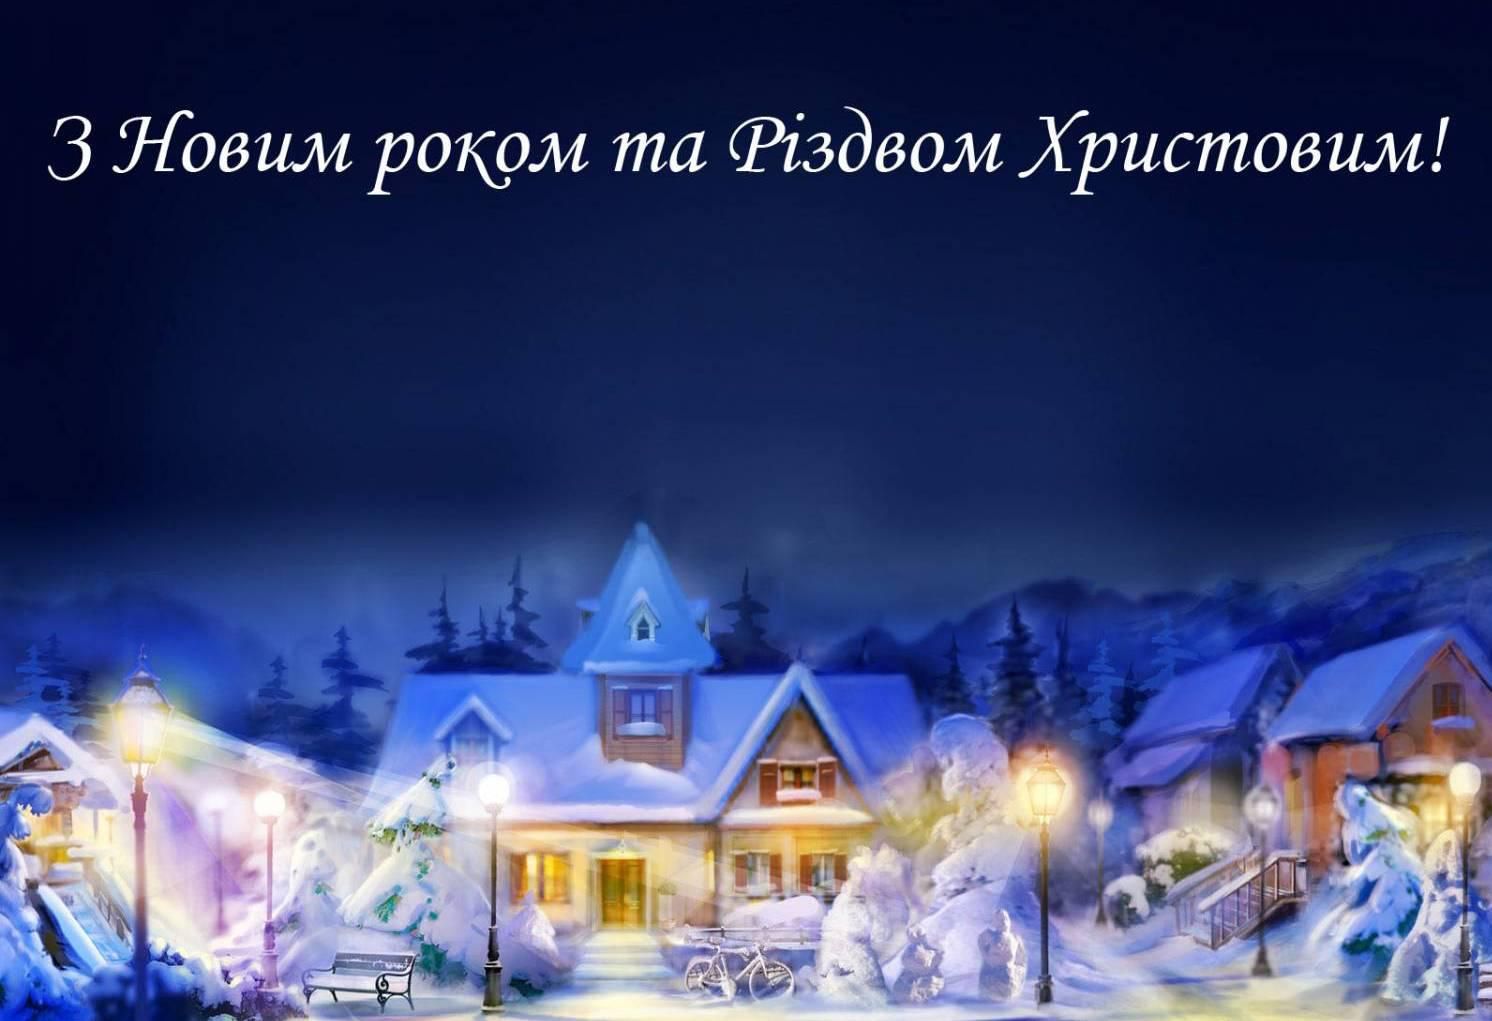 Привітати з Новим роком та Різдвом Христовим до сліз